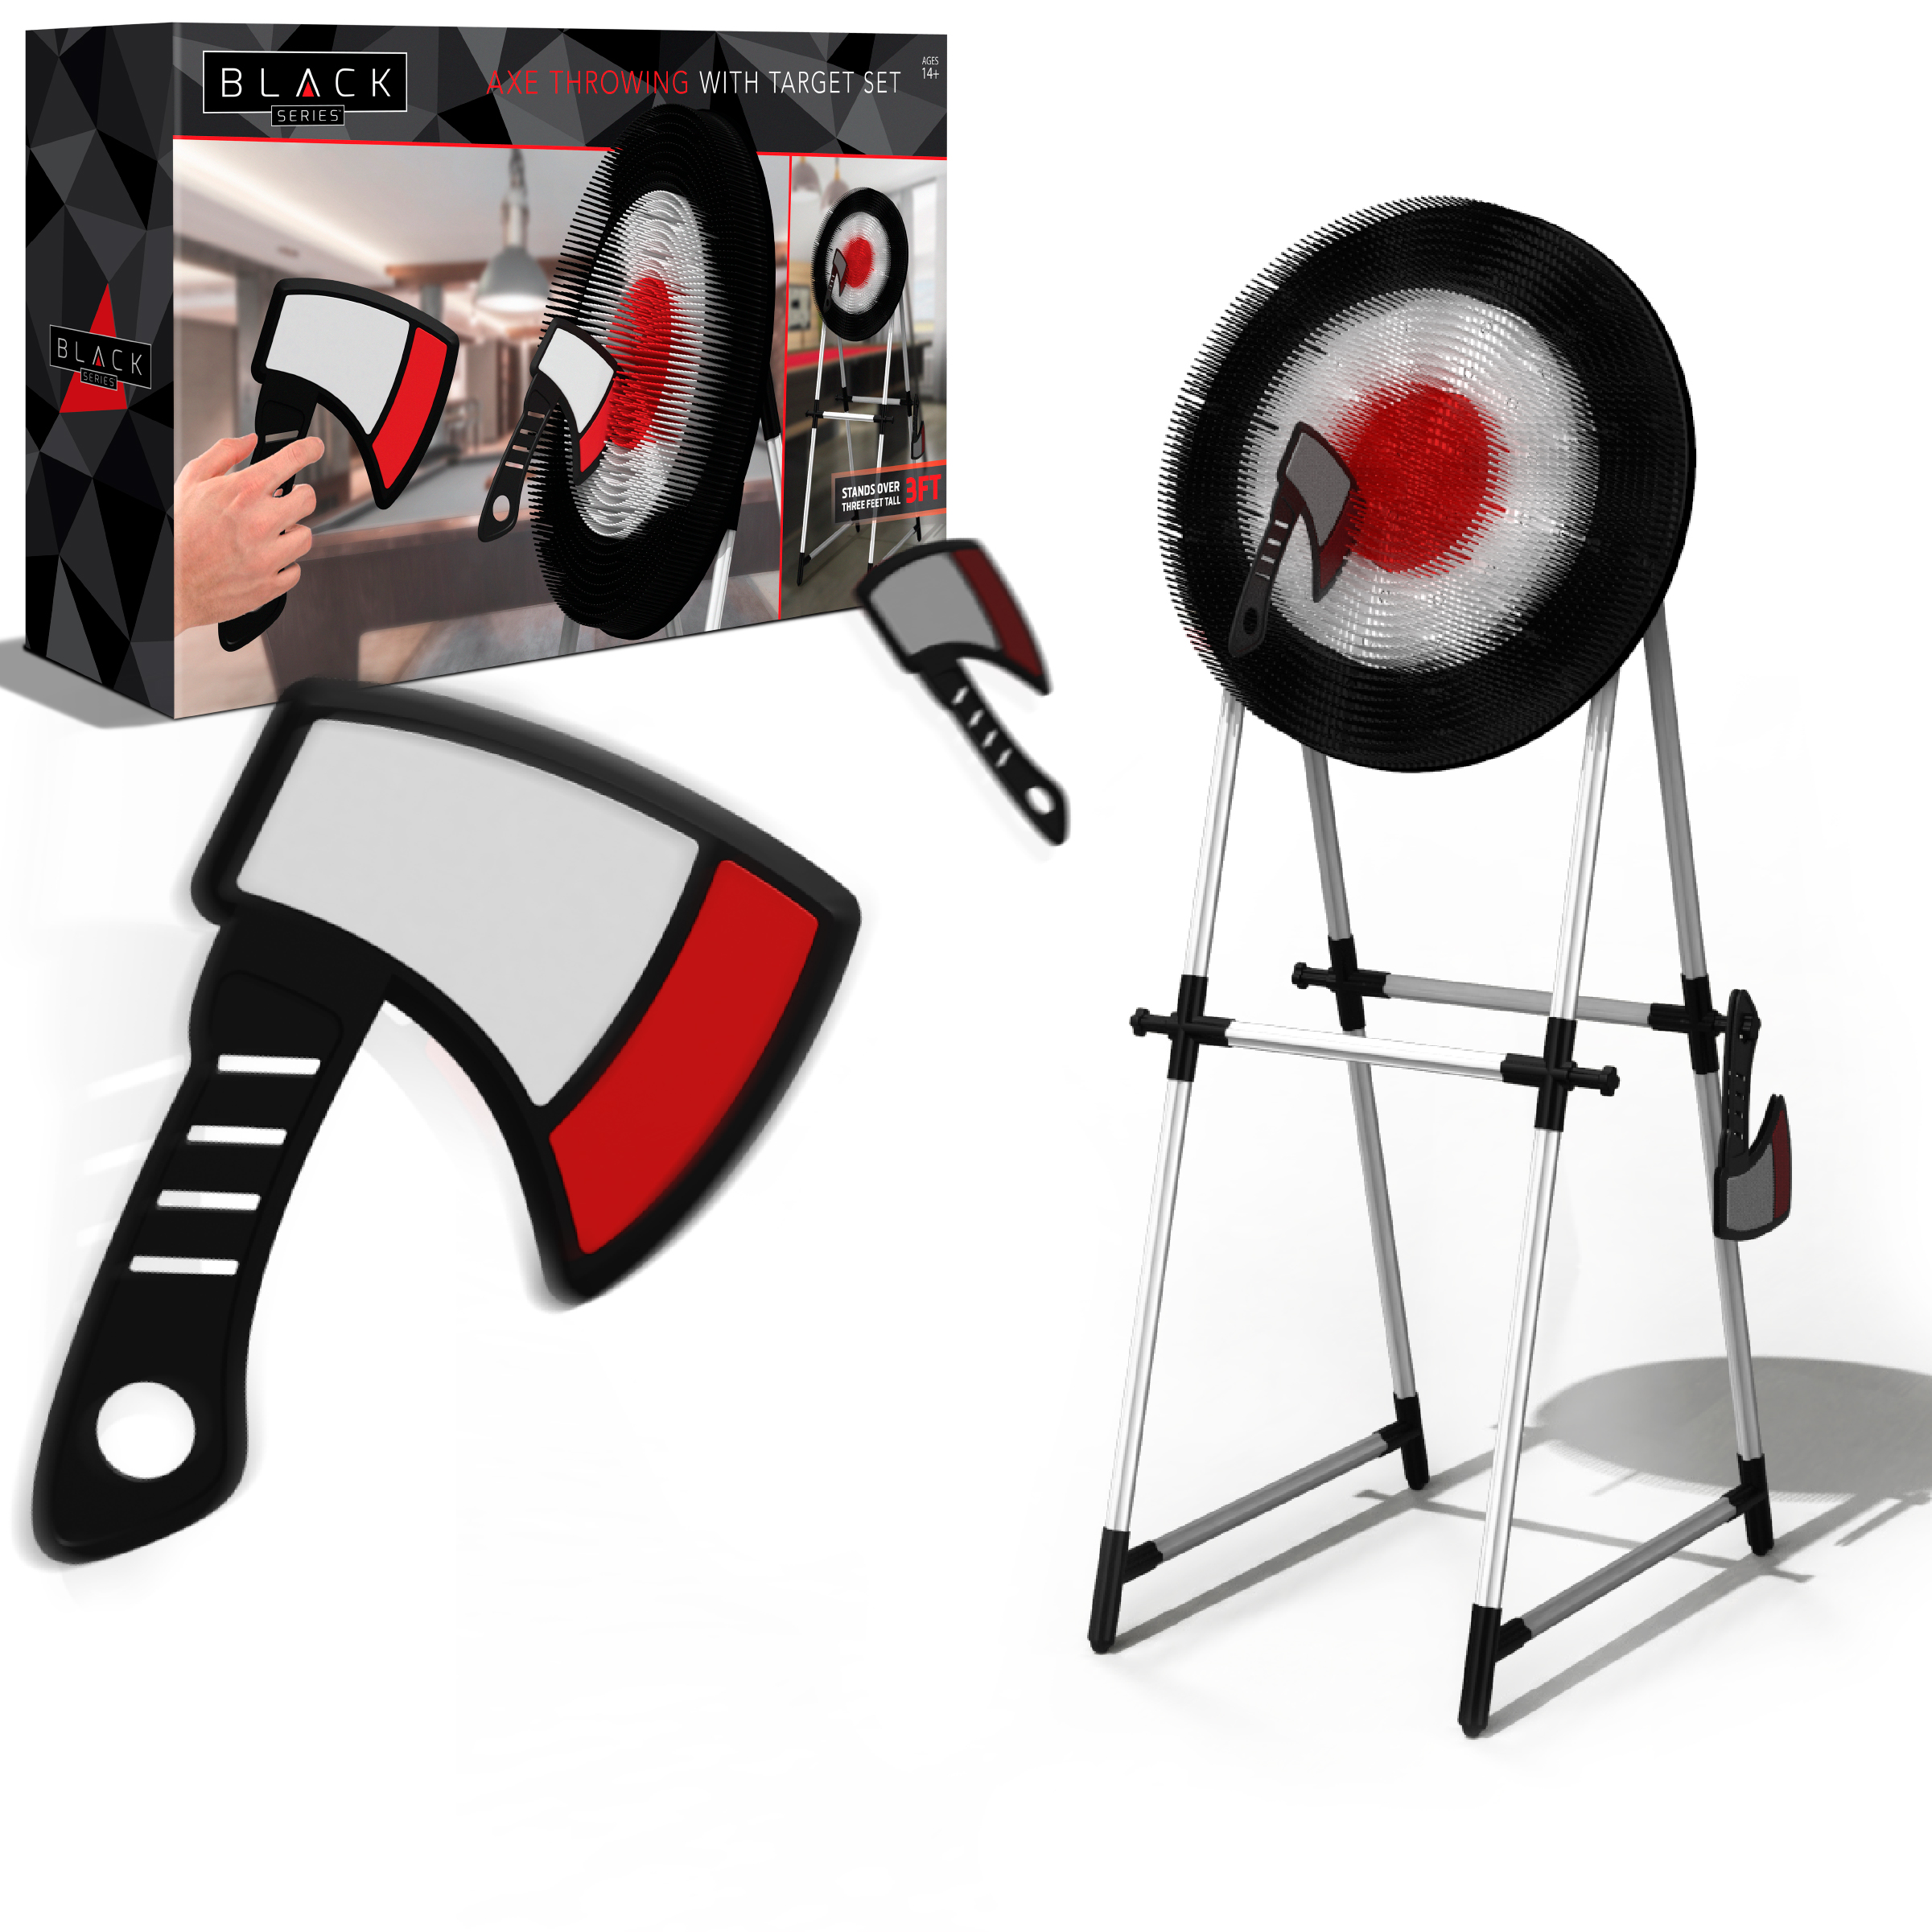 Black Series Red Axe Throwing Game - Indoor/Outdoor, Lightweight